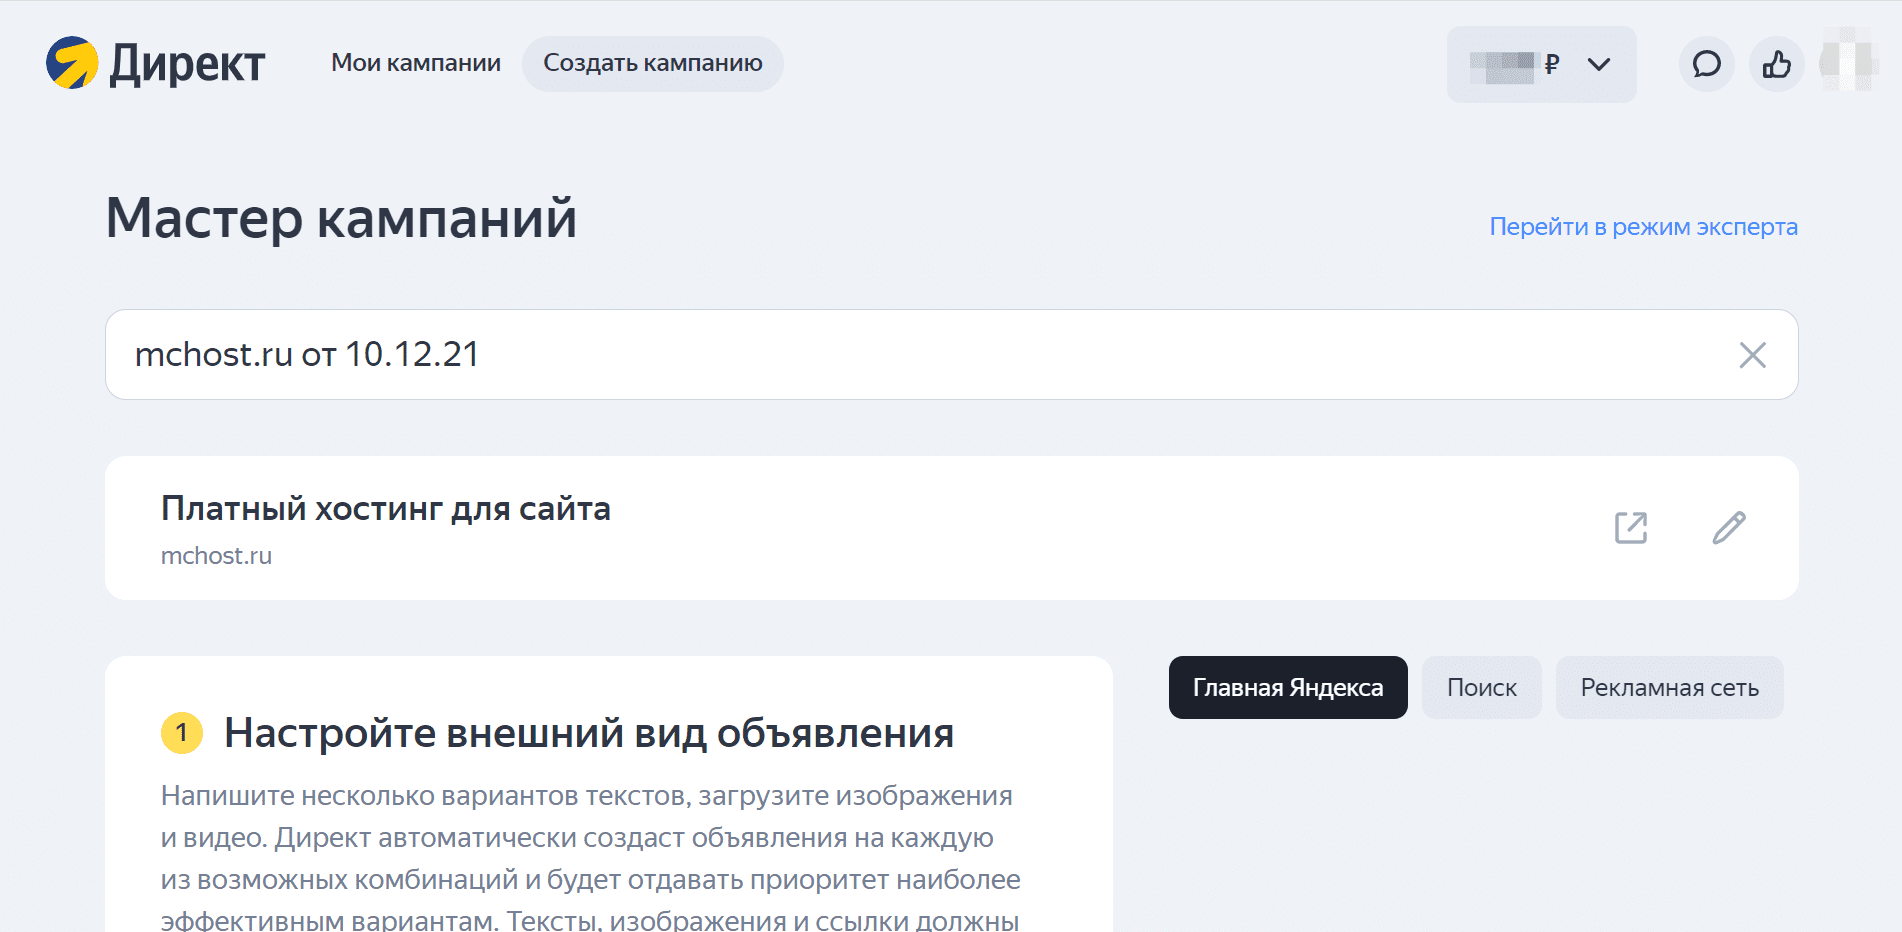 Возможности контекстной рекламы Яндекс.Директ